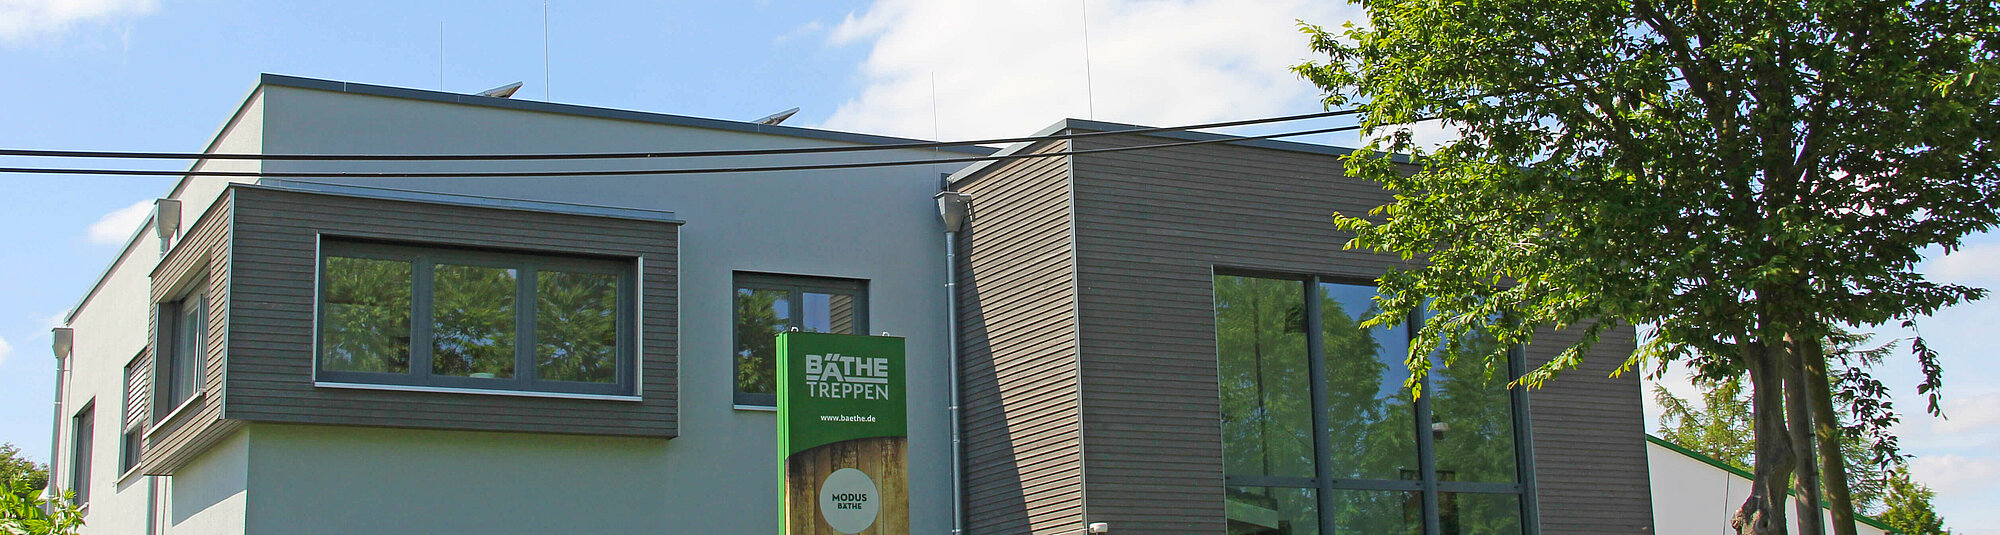 Erfolgreicher Treppenbau mit Compass Software: Bäthe Treppen GmbH